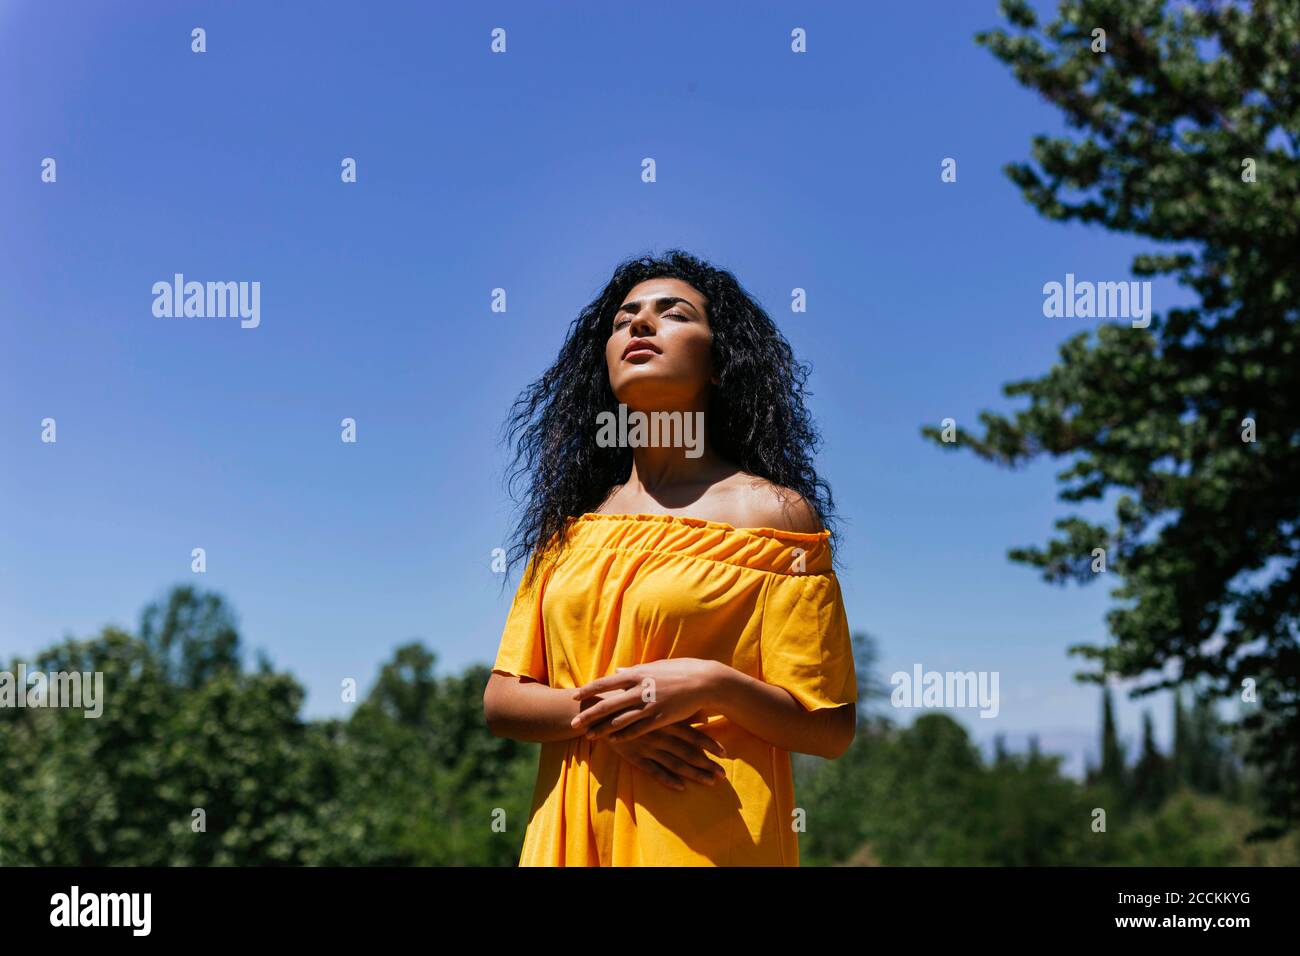 Porträt einer jungen schwarzhaarigen Frau, die die Sonne genießt Stockfoto